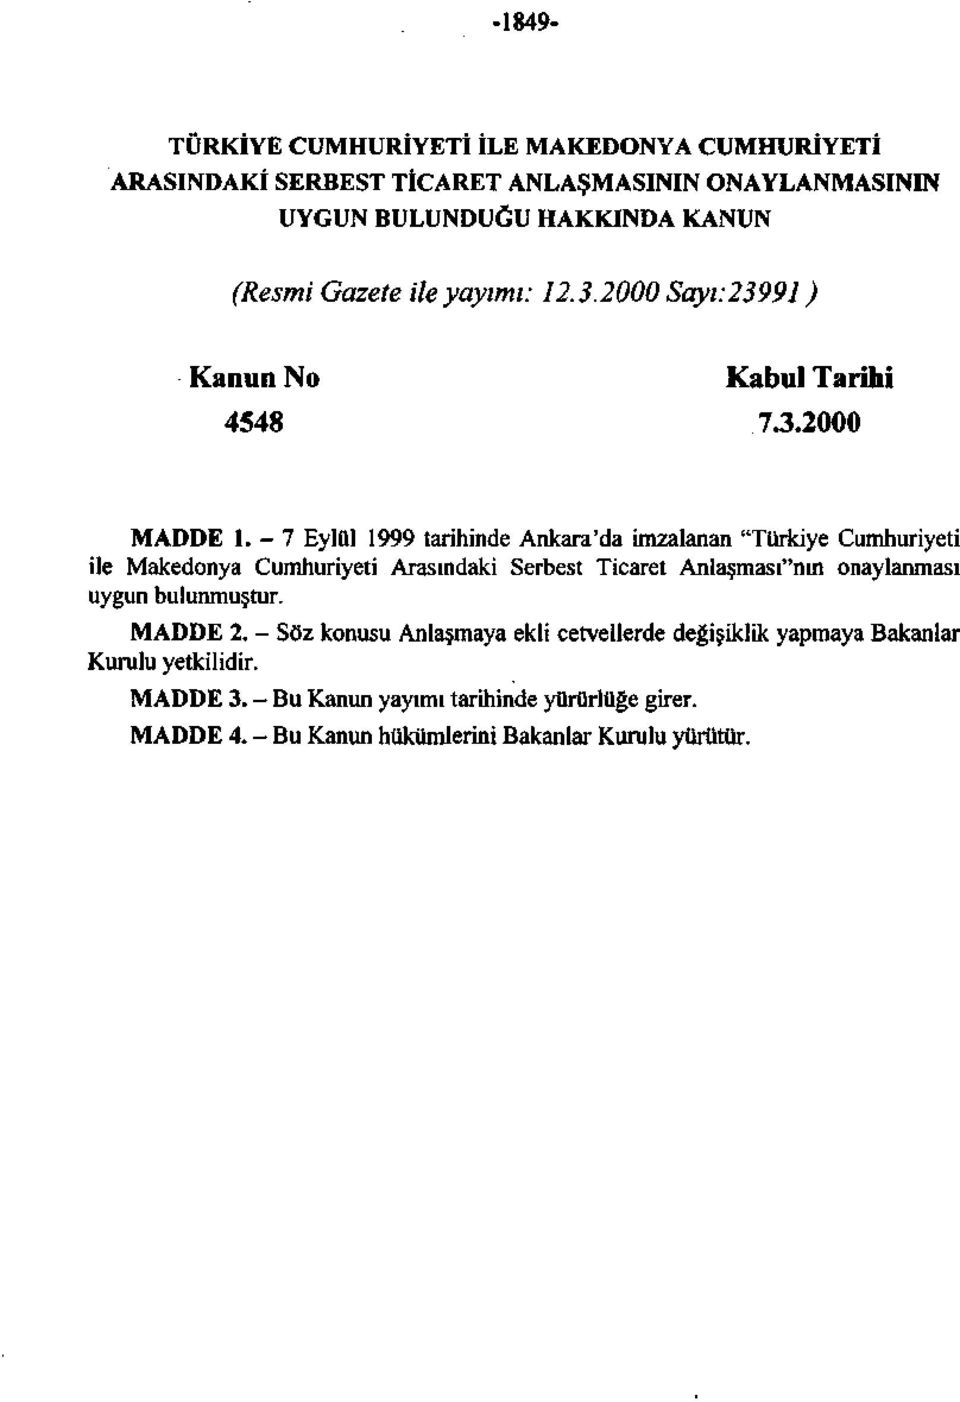 -7 Eylül 1999 tarhnde Ankara'da mzalanan "Türkye Cumhuryet le Makedonya Cumhuryet Arasındak Serbest Tcaret Anlaşması"nın onaylanması uygun